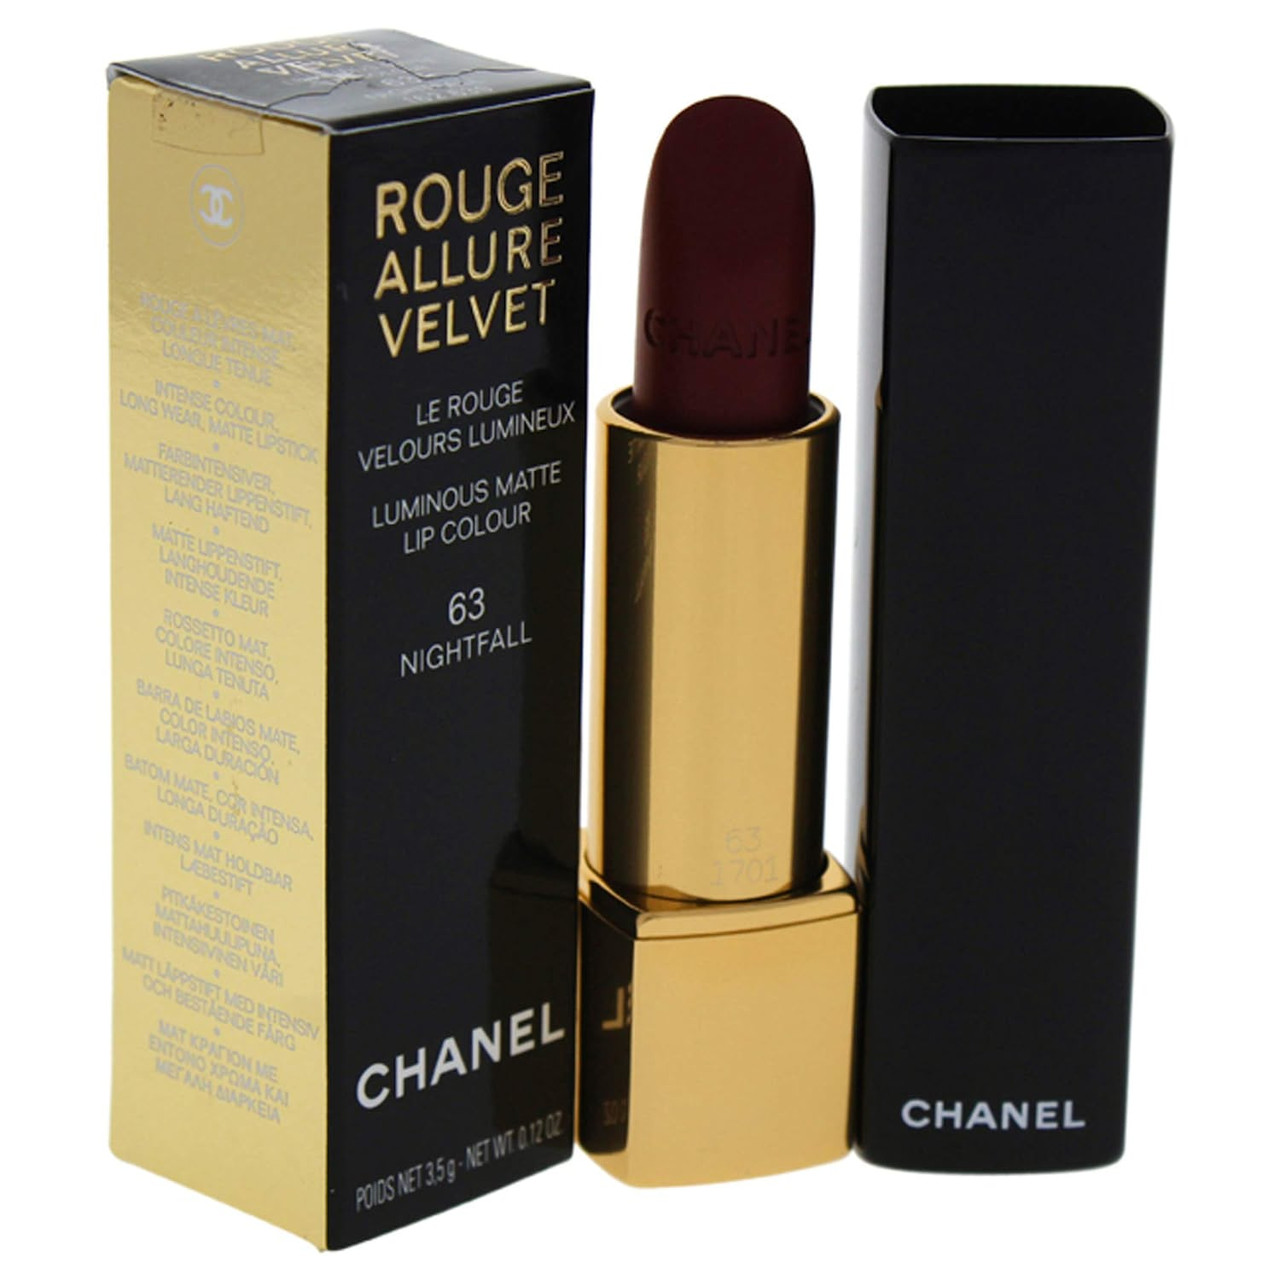 Chanel Rouge Allure Velvet Luminous Matte Lip Colour 63 Nightfall